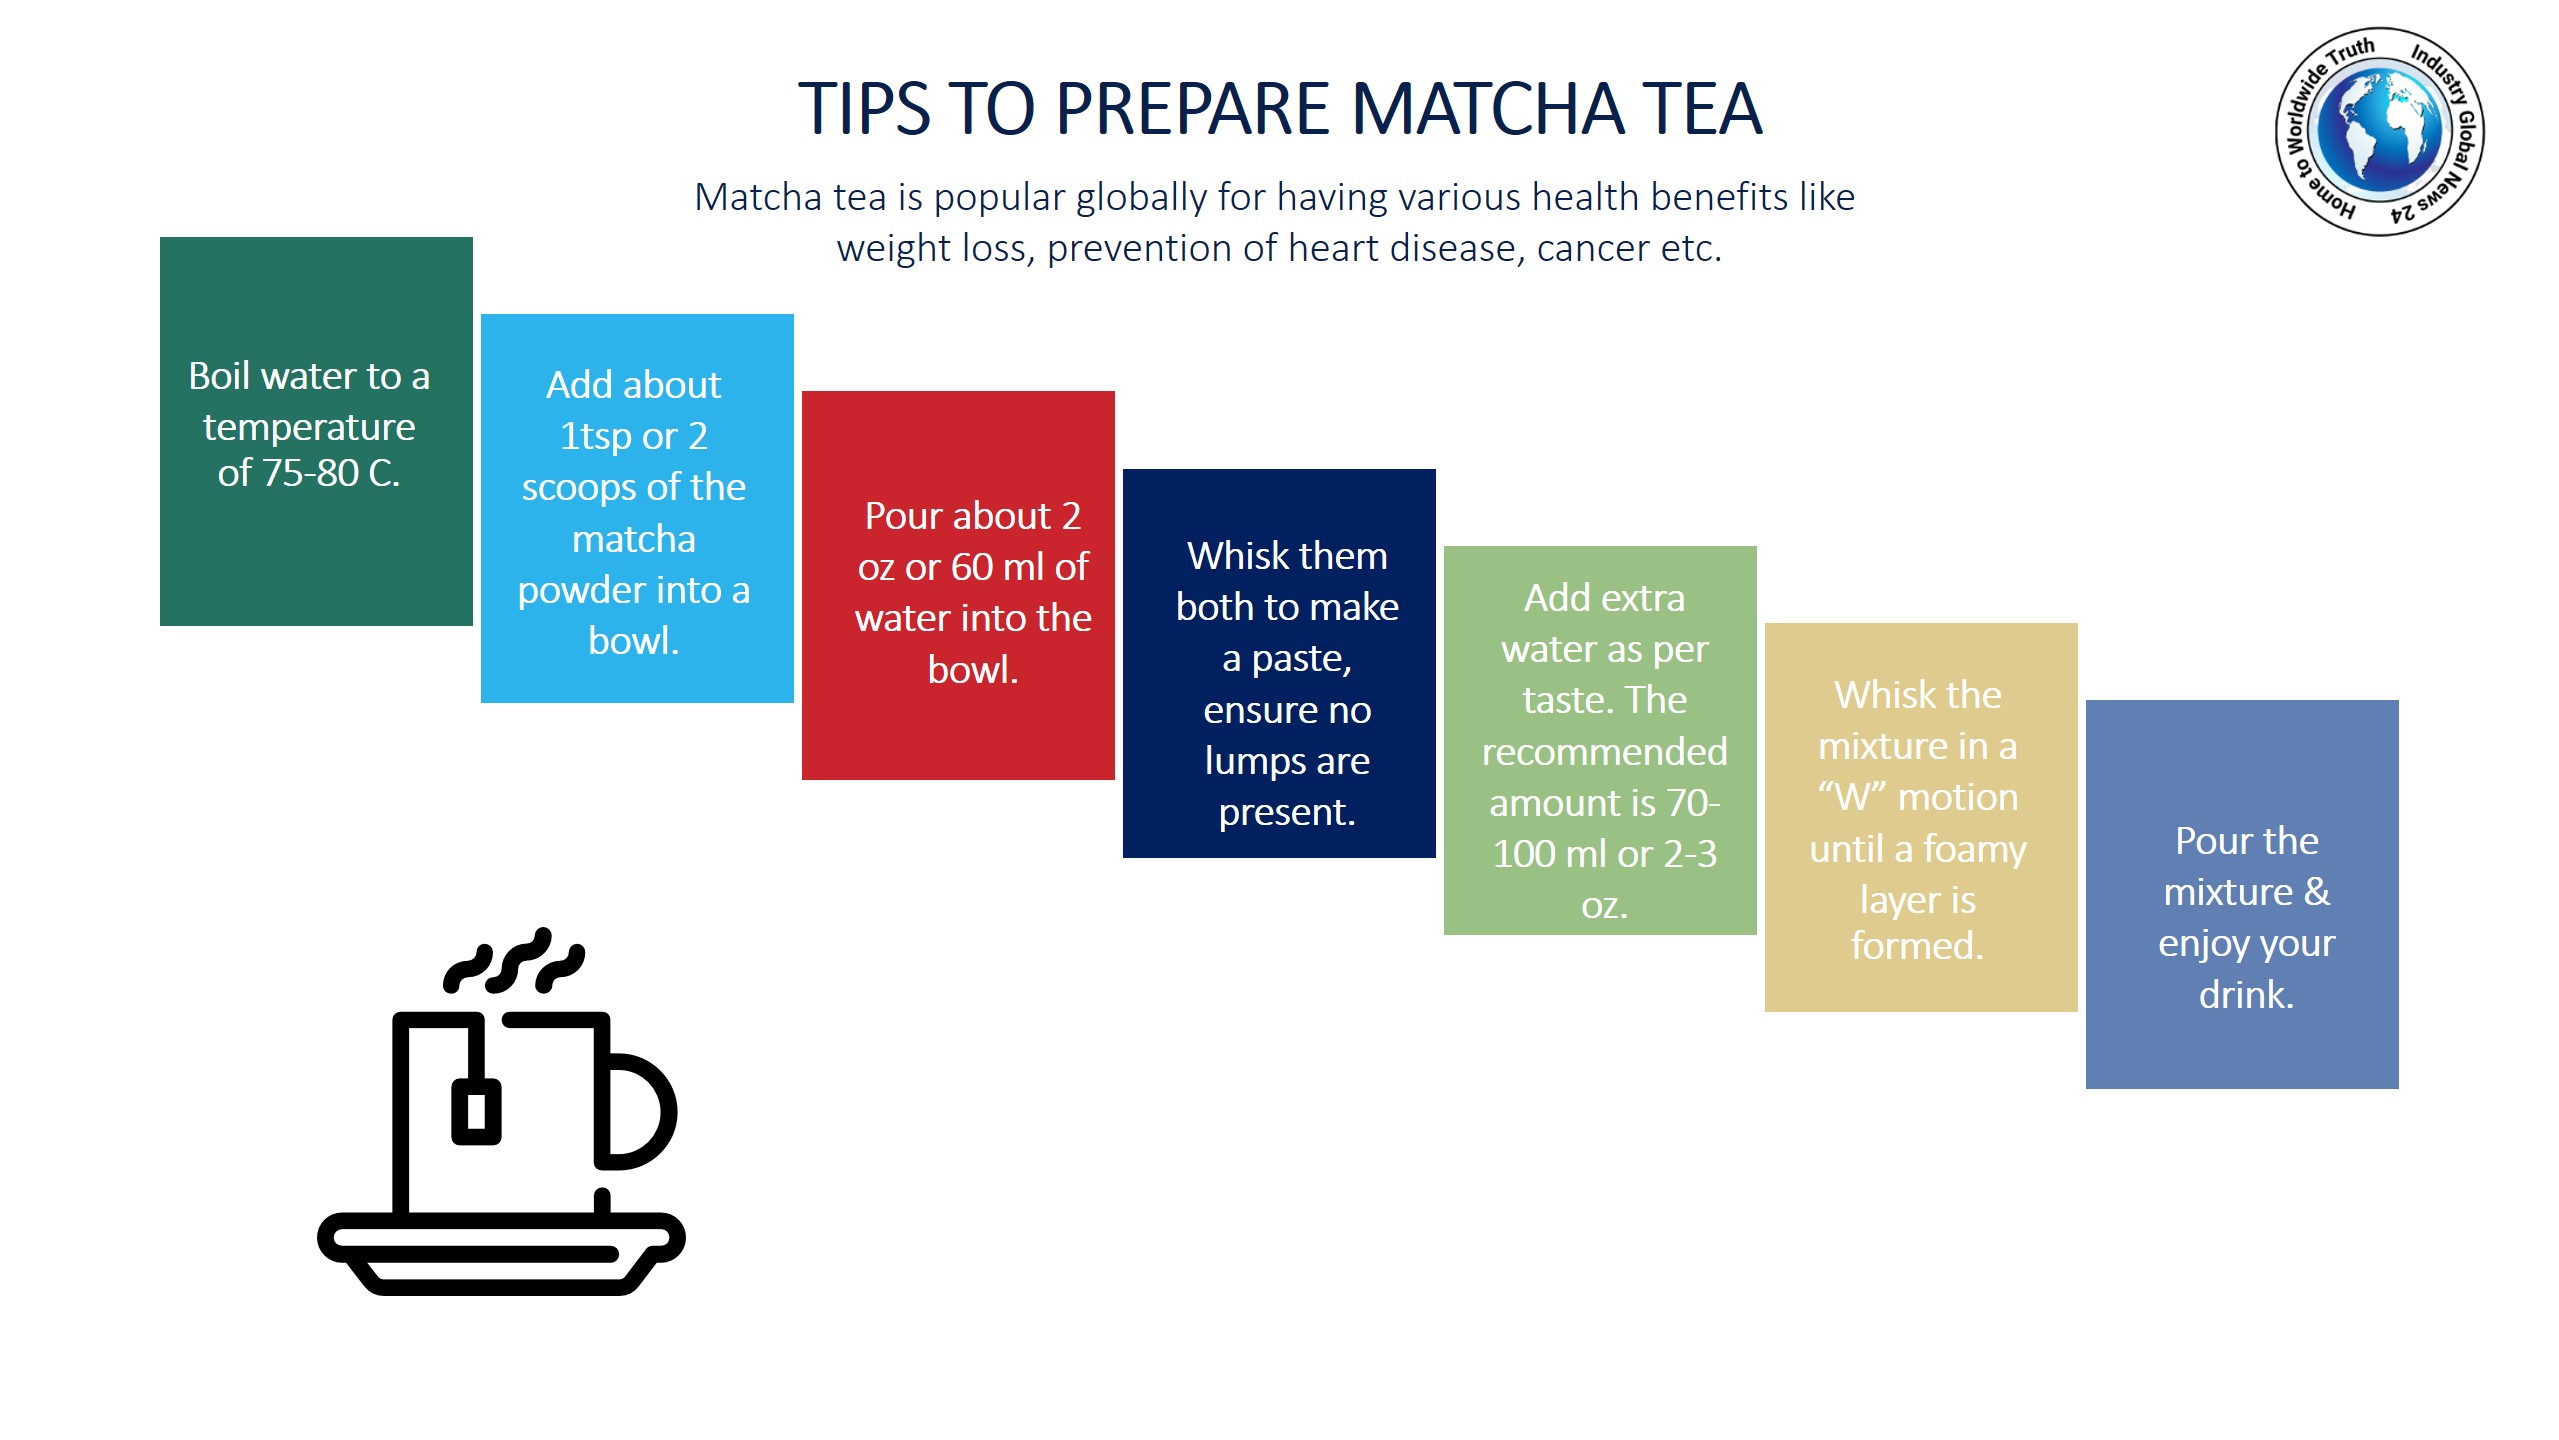 Tips to prepare Matcha tea